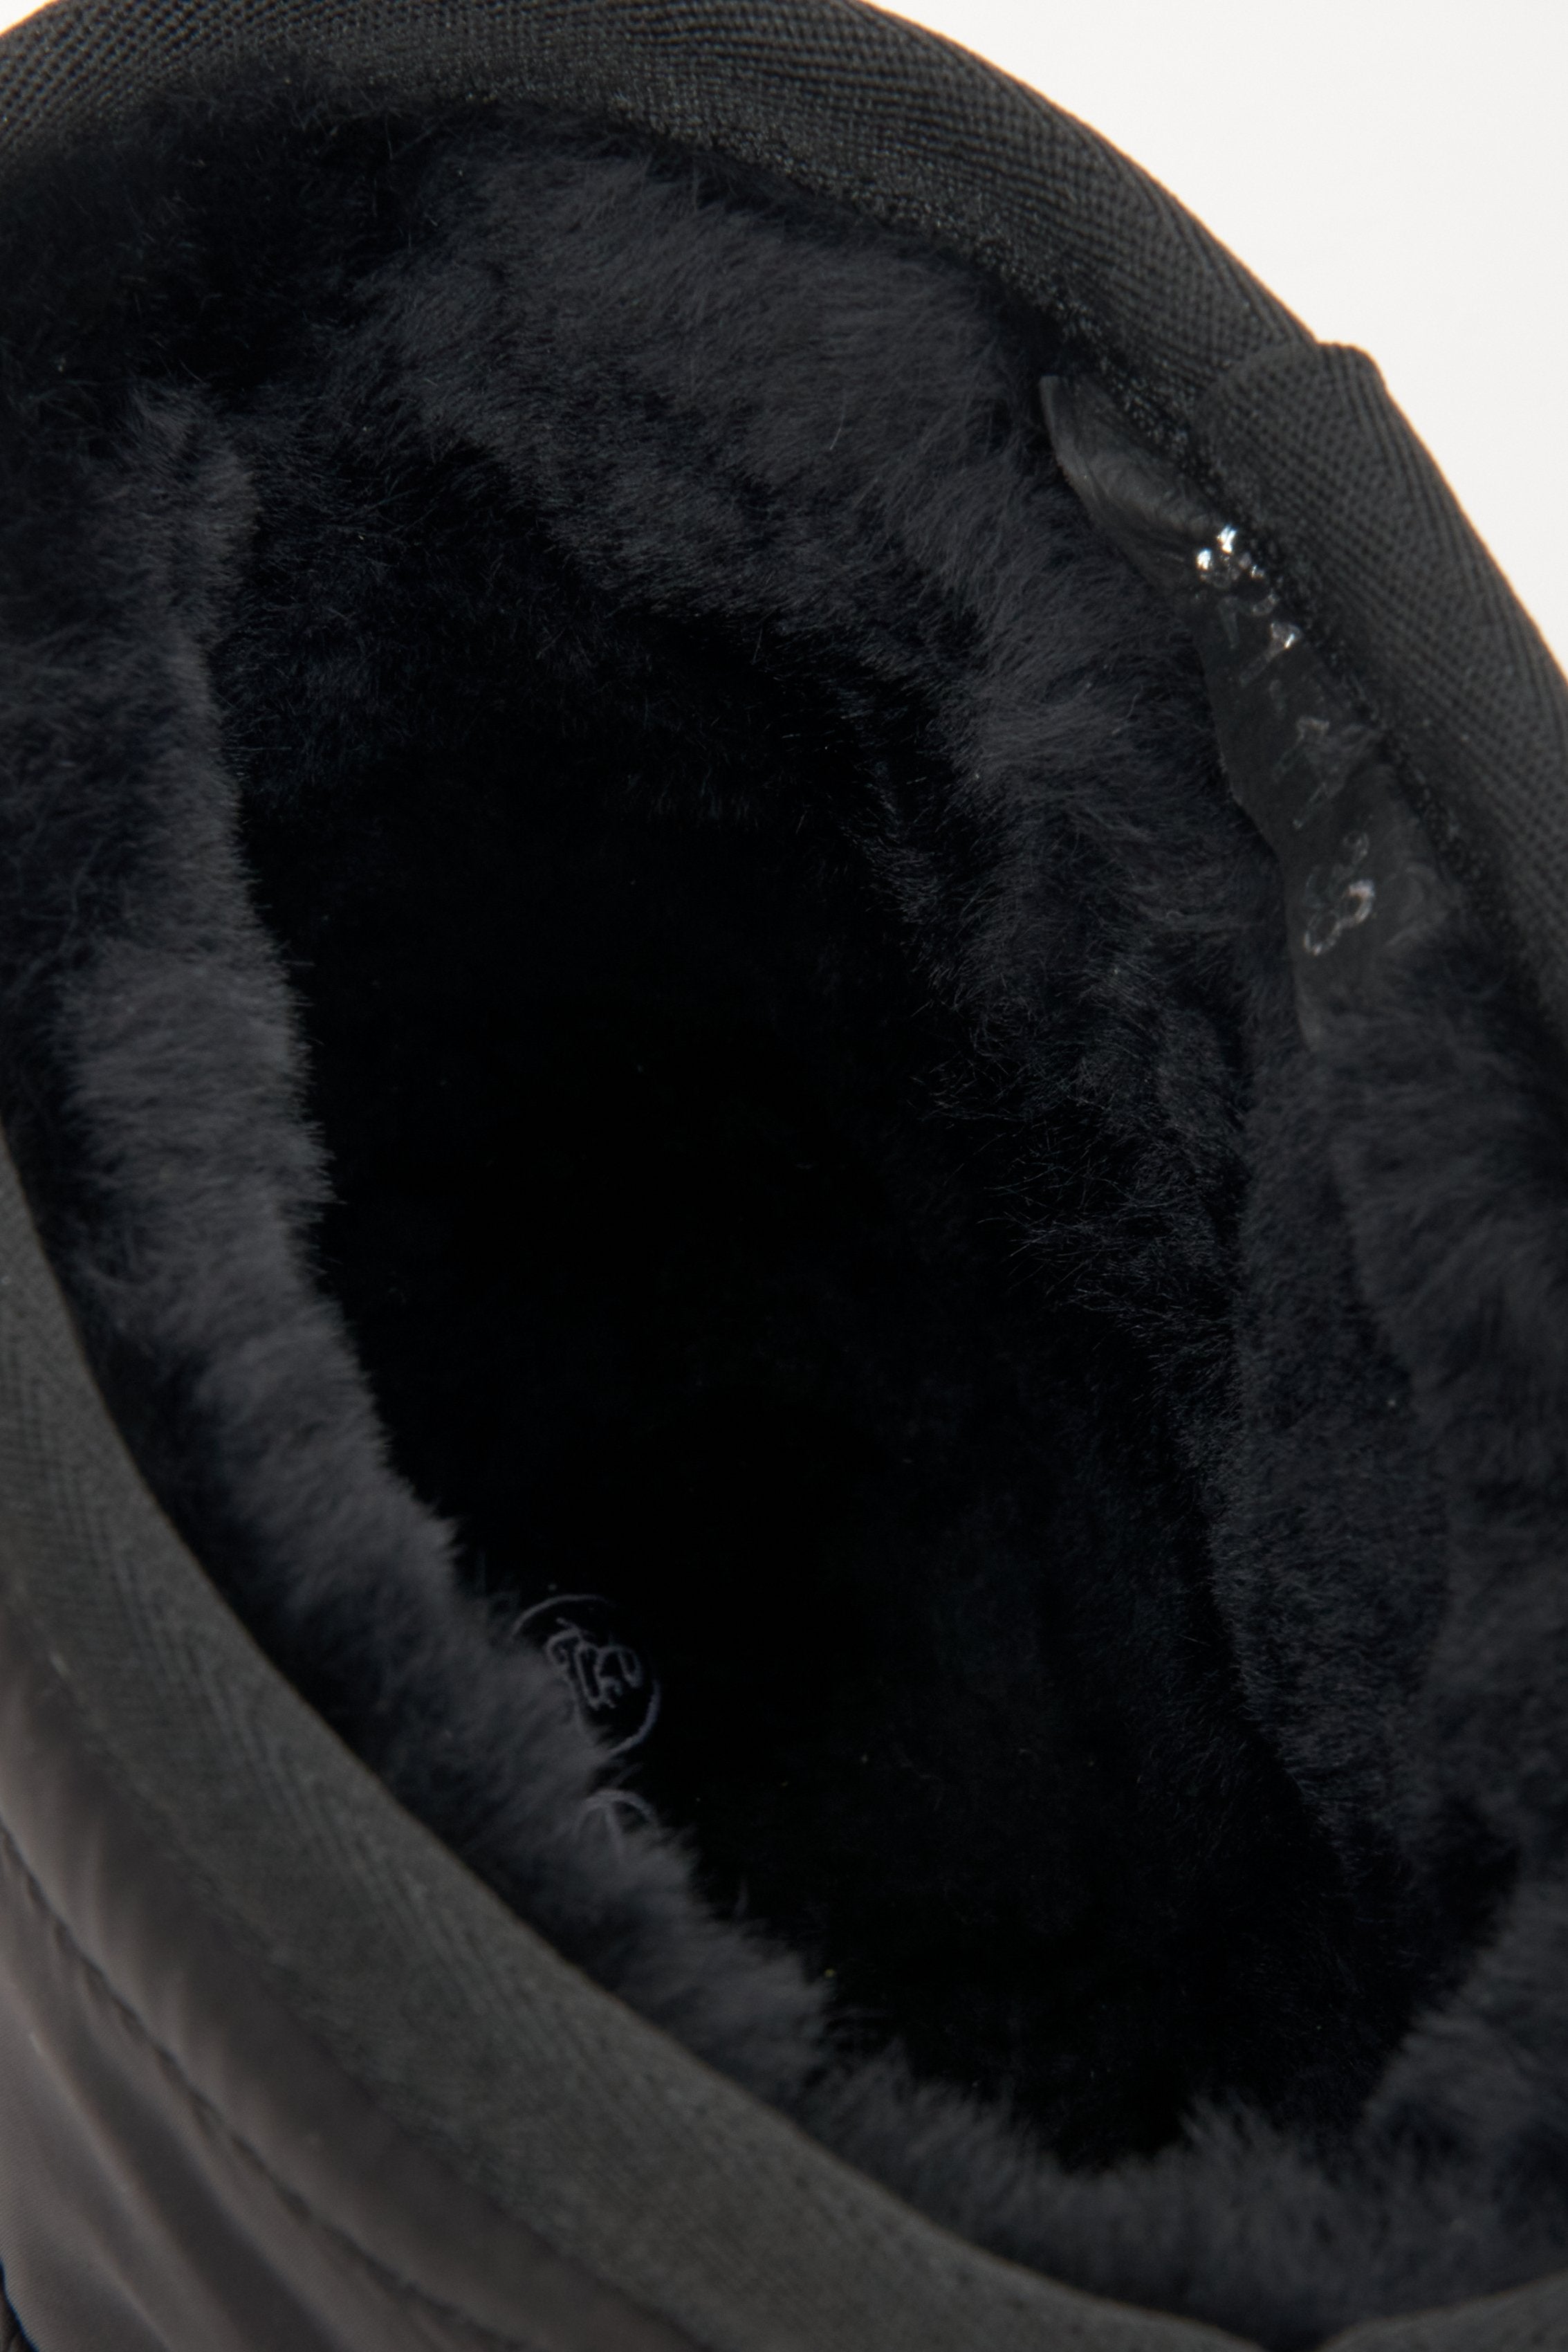 Czarne śniegowce damskie Estro - zbliżenie na miękki, futrzany wsad buta.